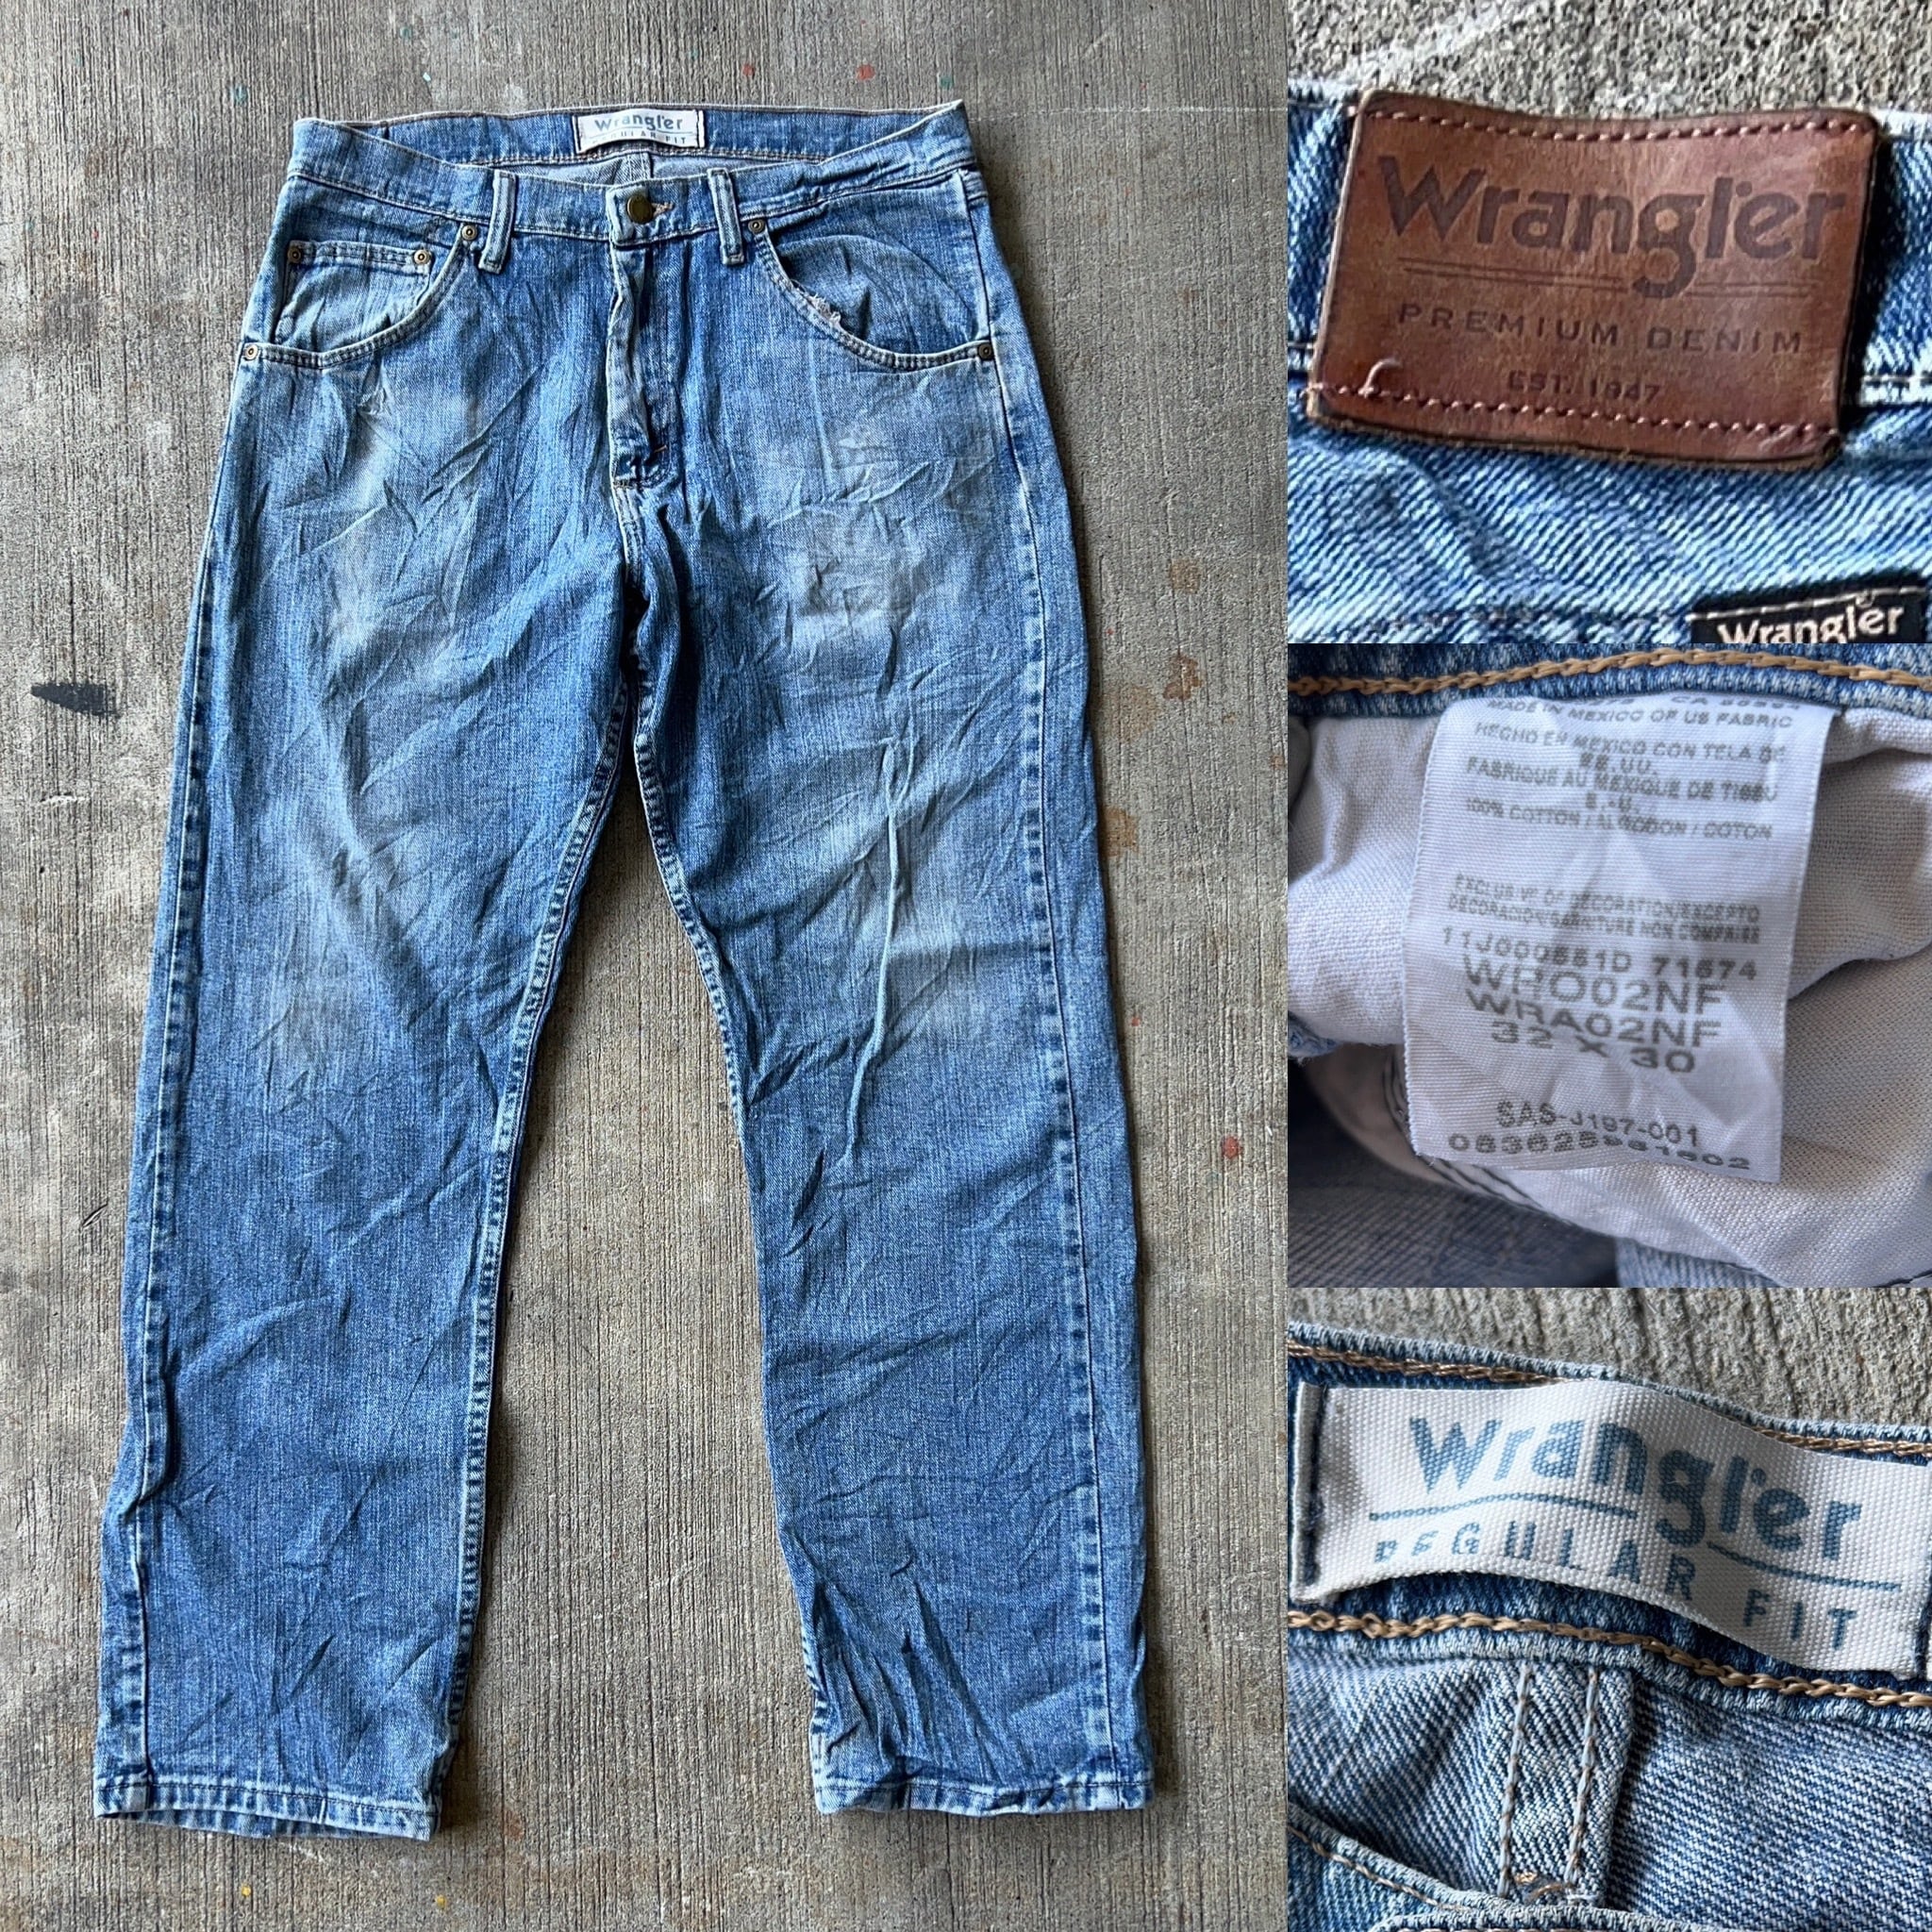 Wrangler Regular Fit Jeans ラングラー ストレート デニムパンツ 色落ち W32  L30【3000円均一商品】【2点以上の購入で1000円OFF】【TH0141】